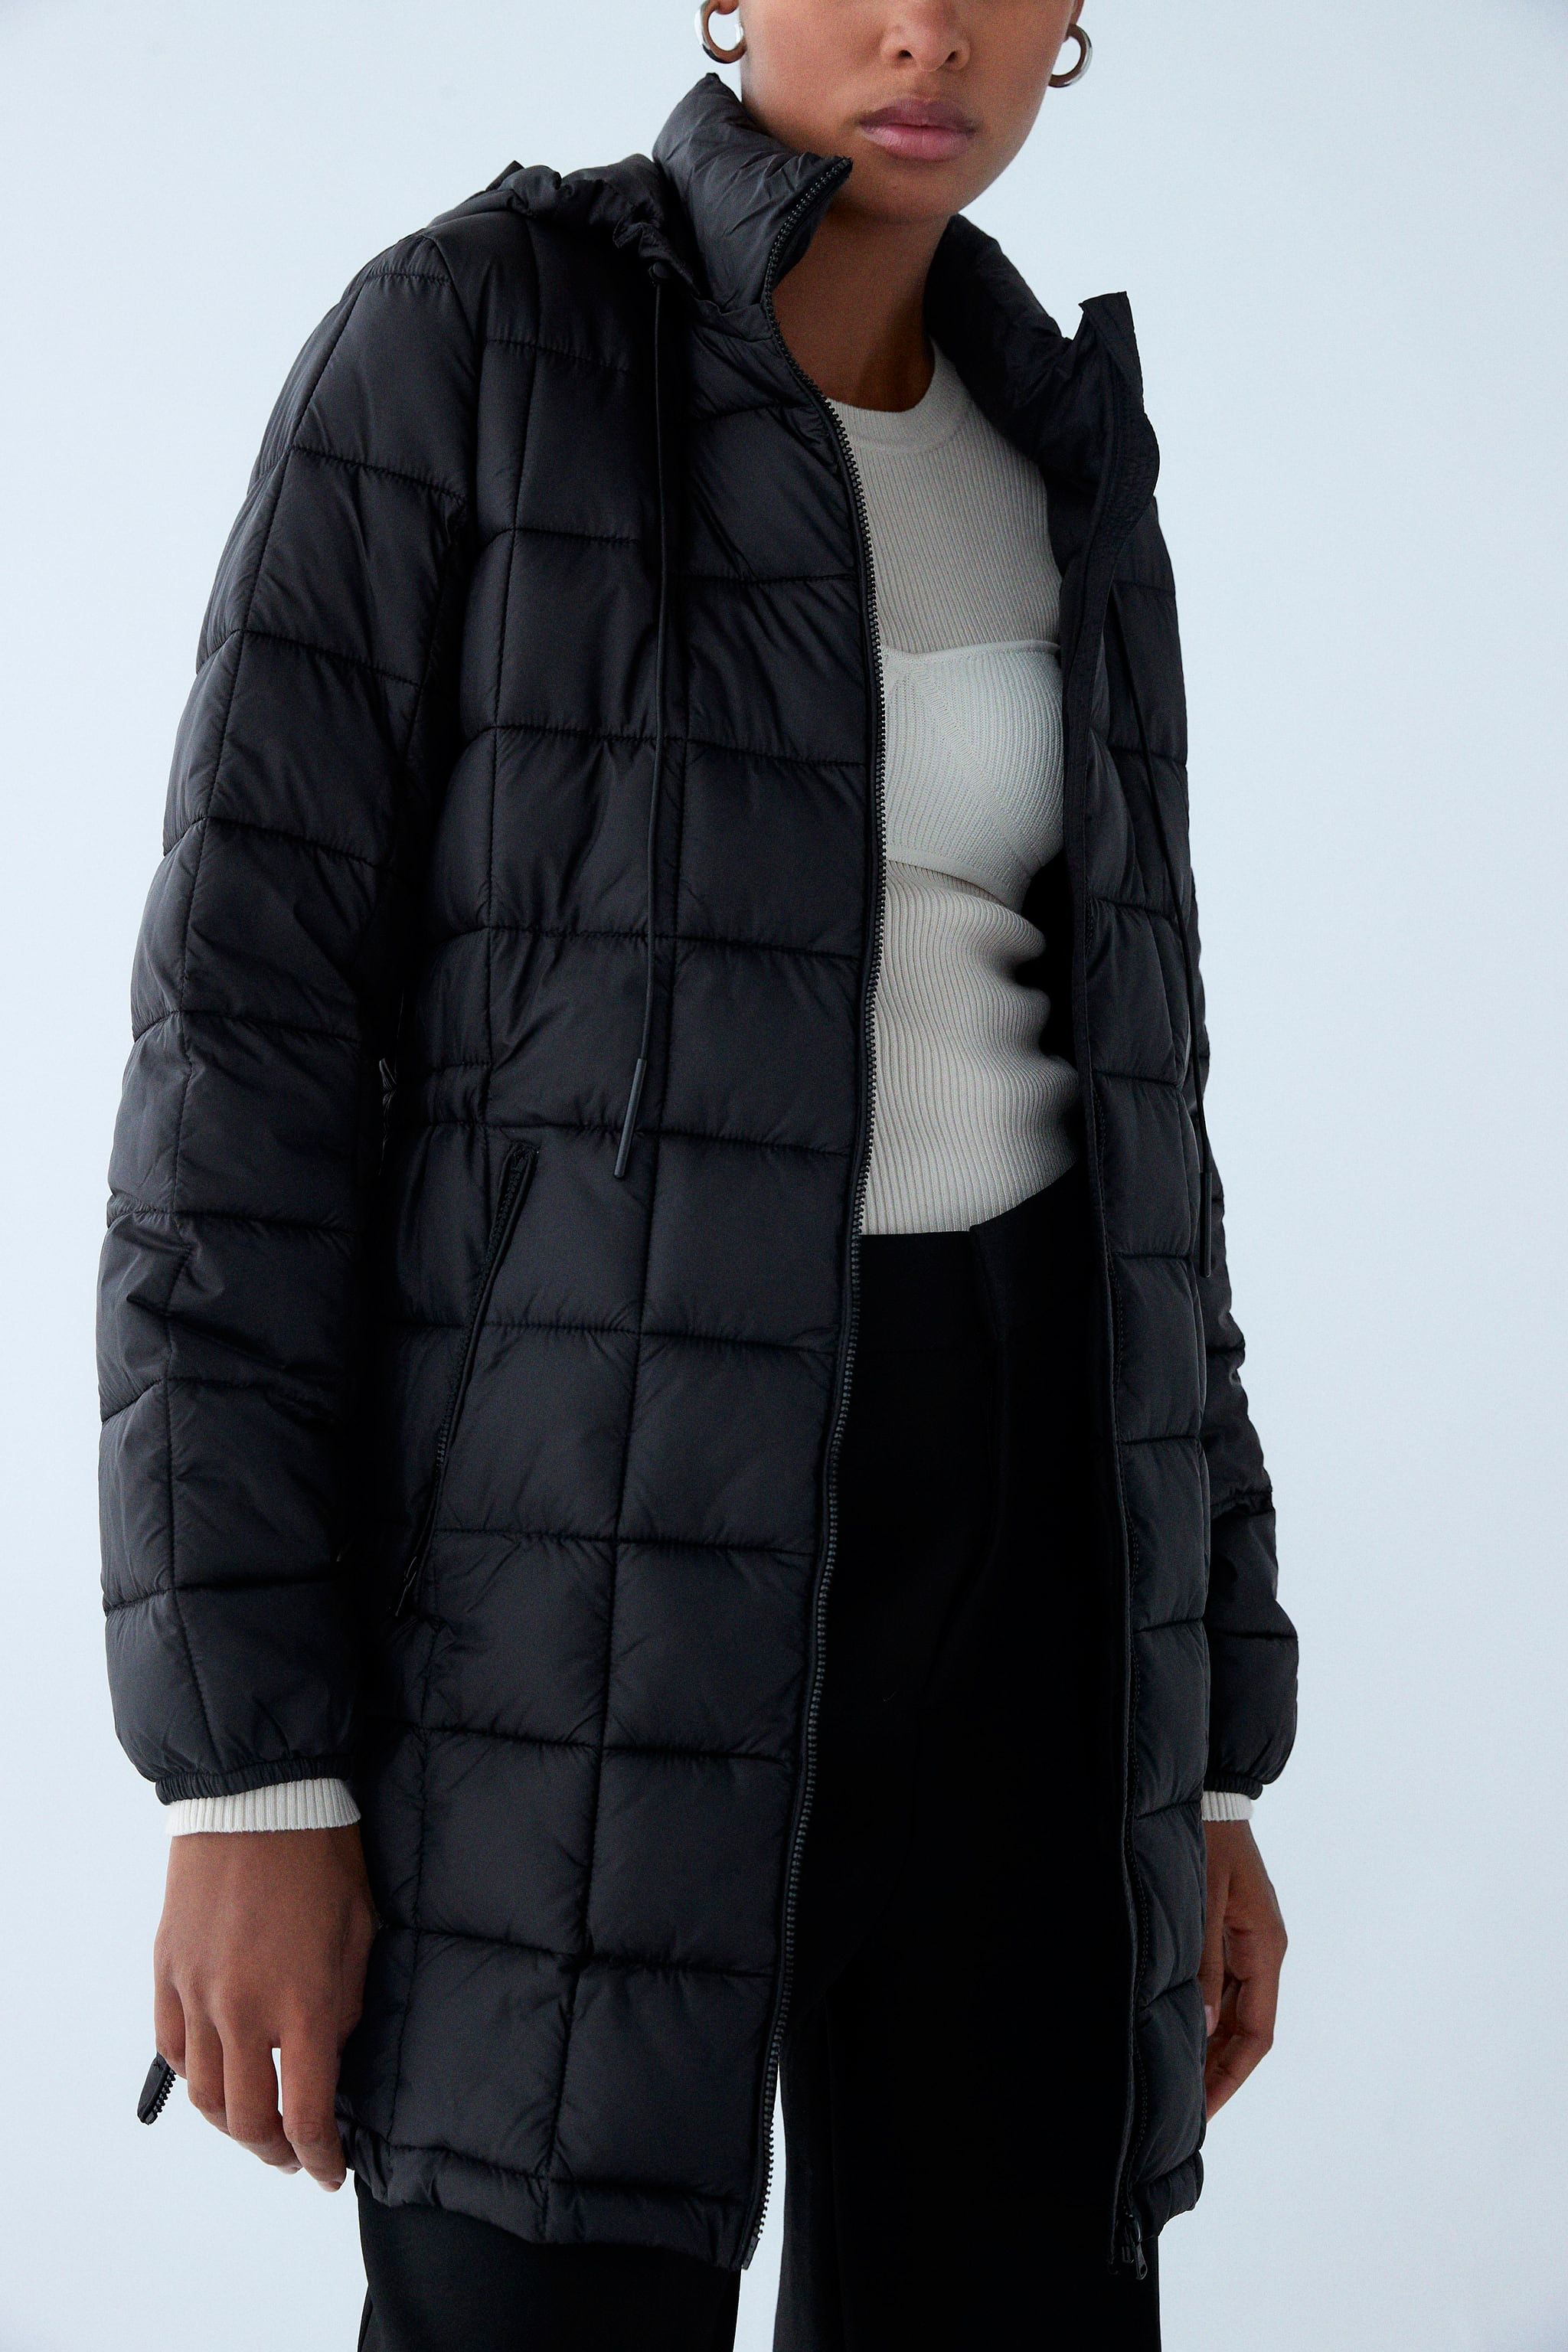 Consulta banco mezcla El abrigo plumífero negro sostenible de Zara que arrasa en ventas